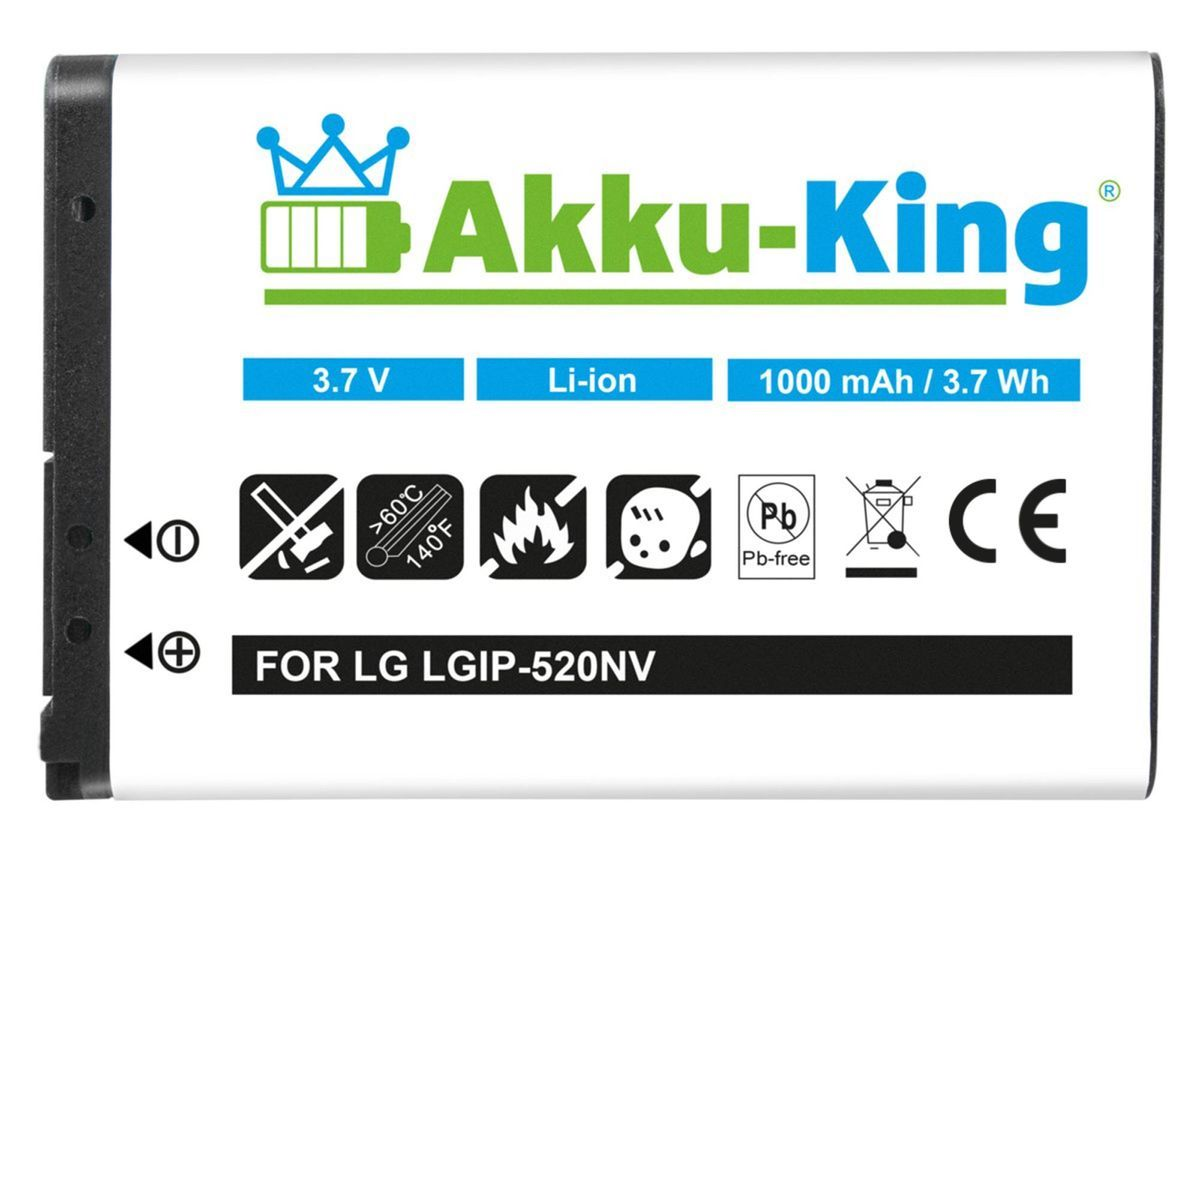 kompatibel AKKU-KING mit Akku Handy-Akku, LGIP-520N 3.7 1000mAh LG Volt, Li-Ion